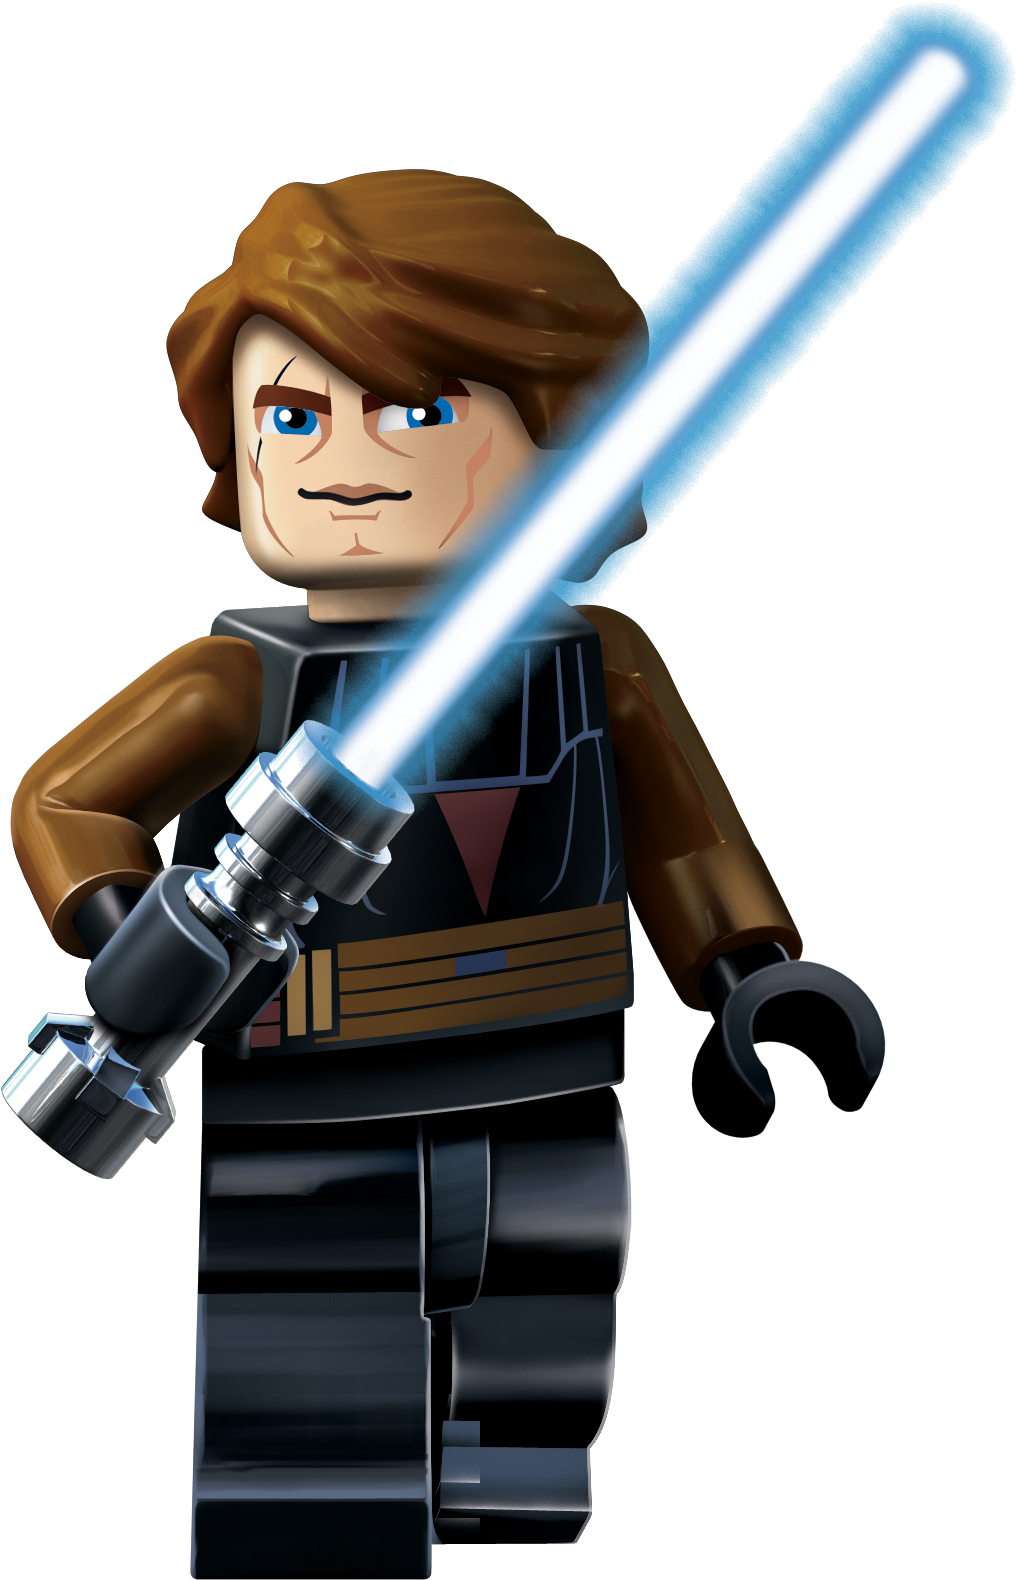 Download PNG image - Lego Star Wars Transparent PNG 